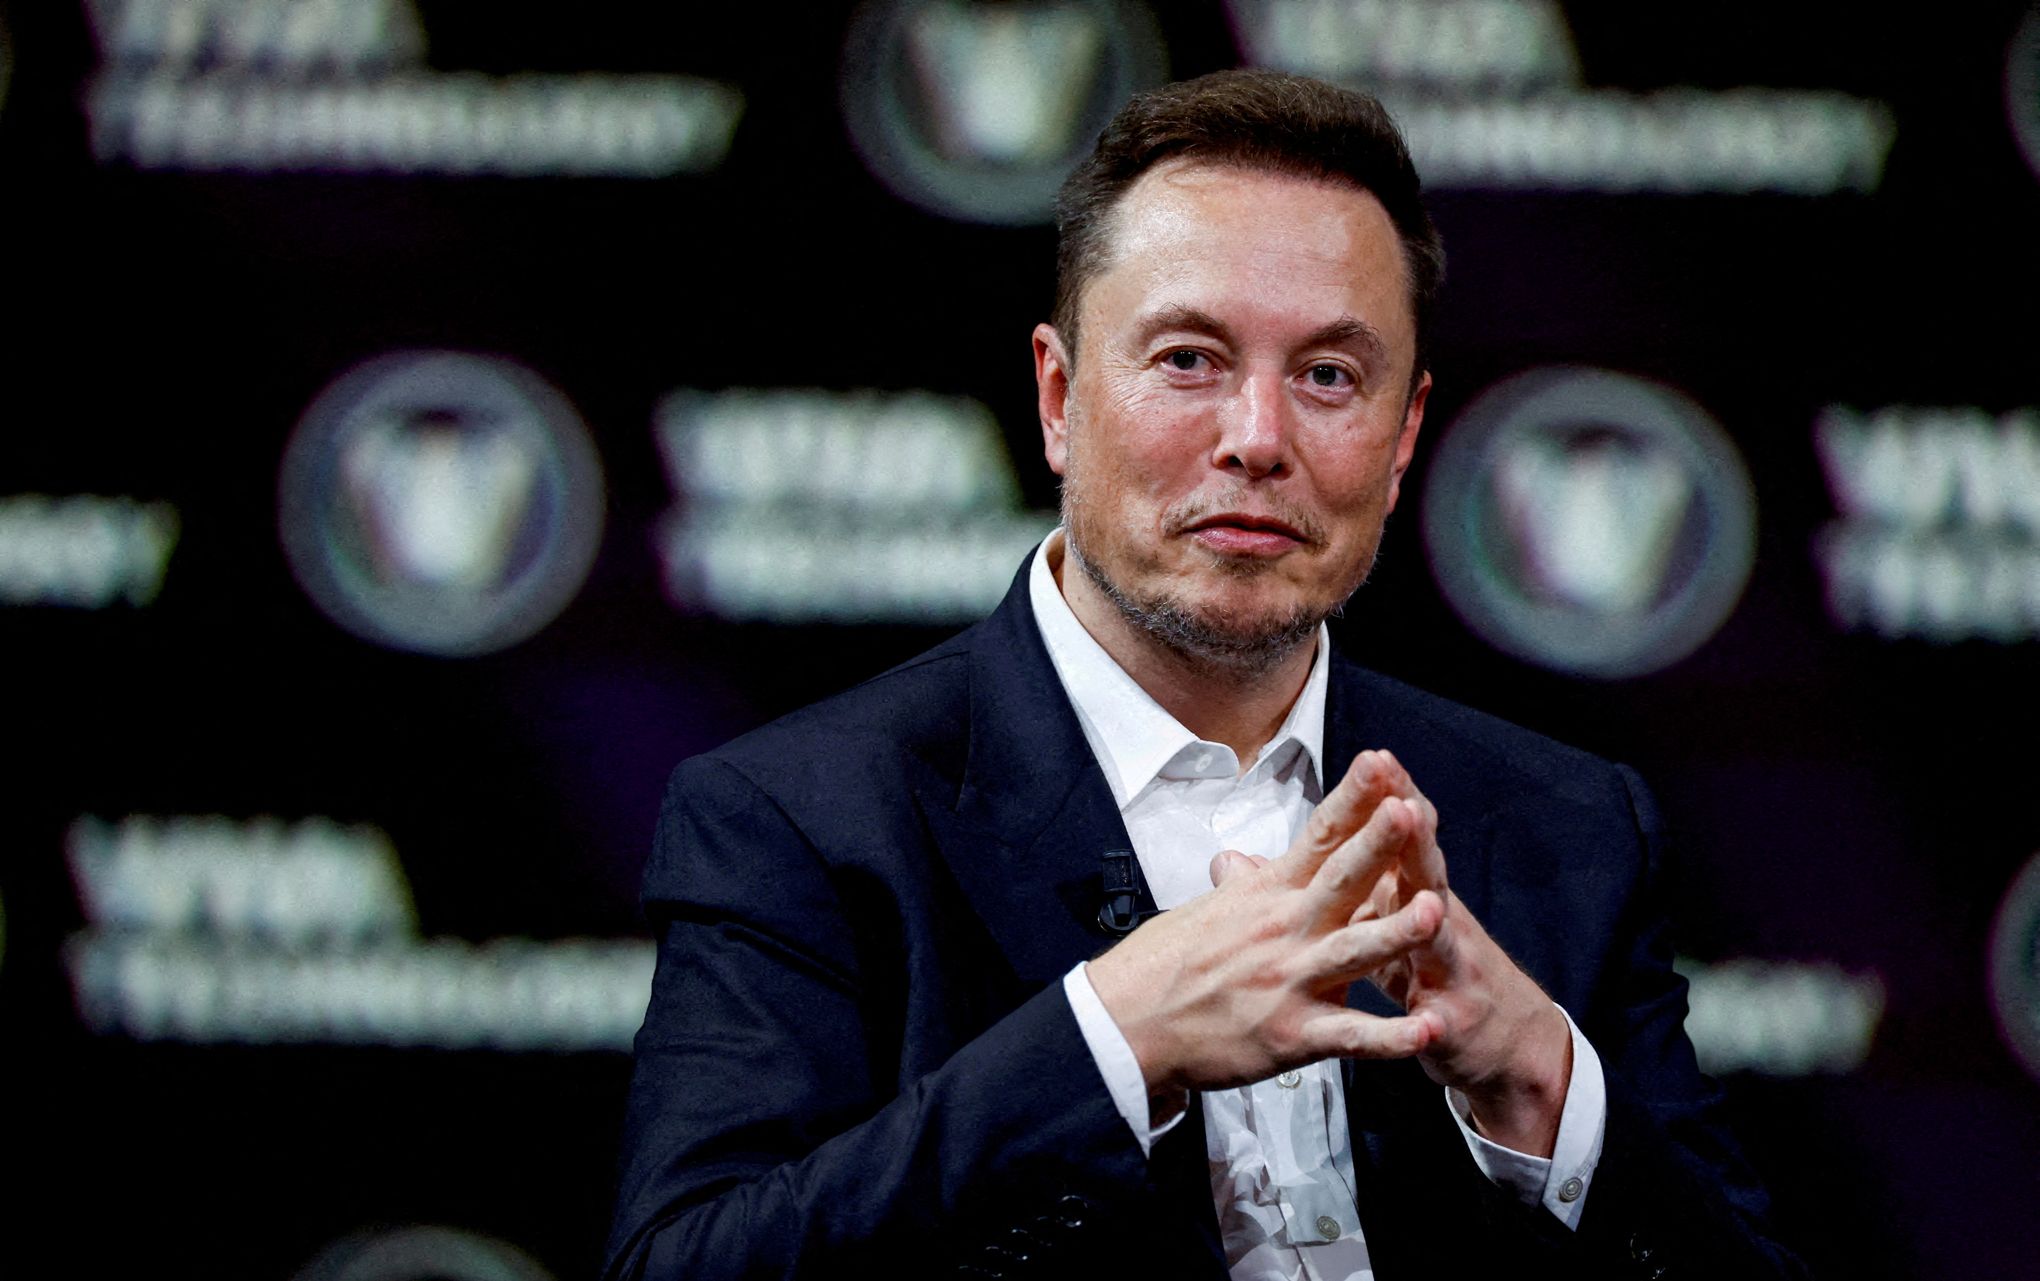 Les promesses d'Elon Musk n'engagent que ceux qui les croient